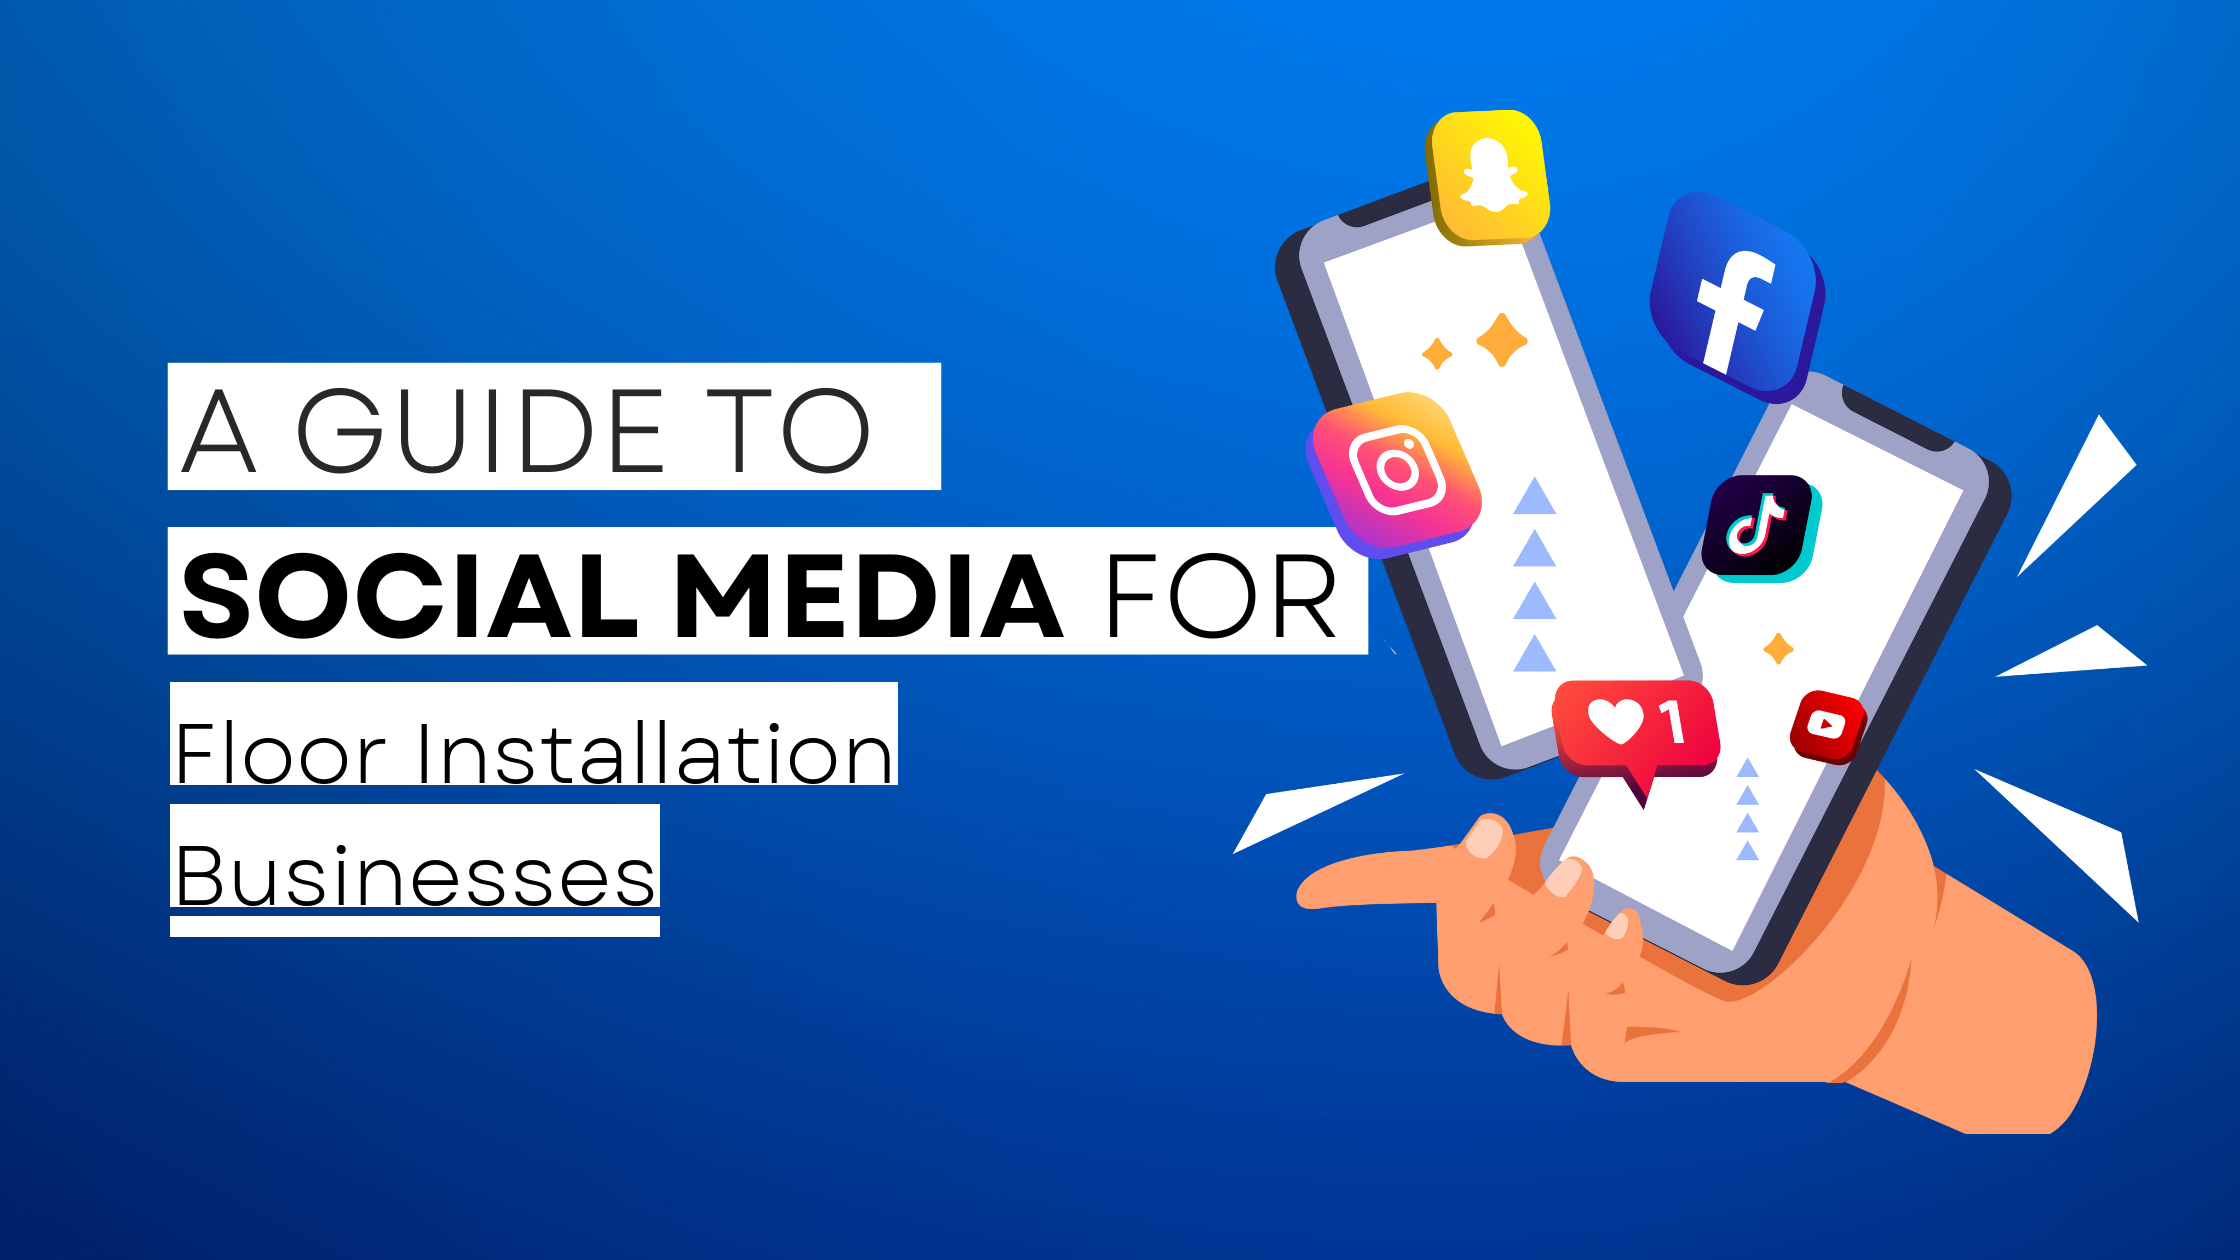 How to start Floor Installation  on social media